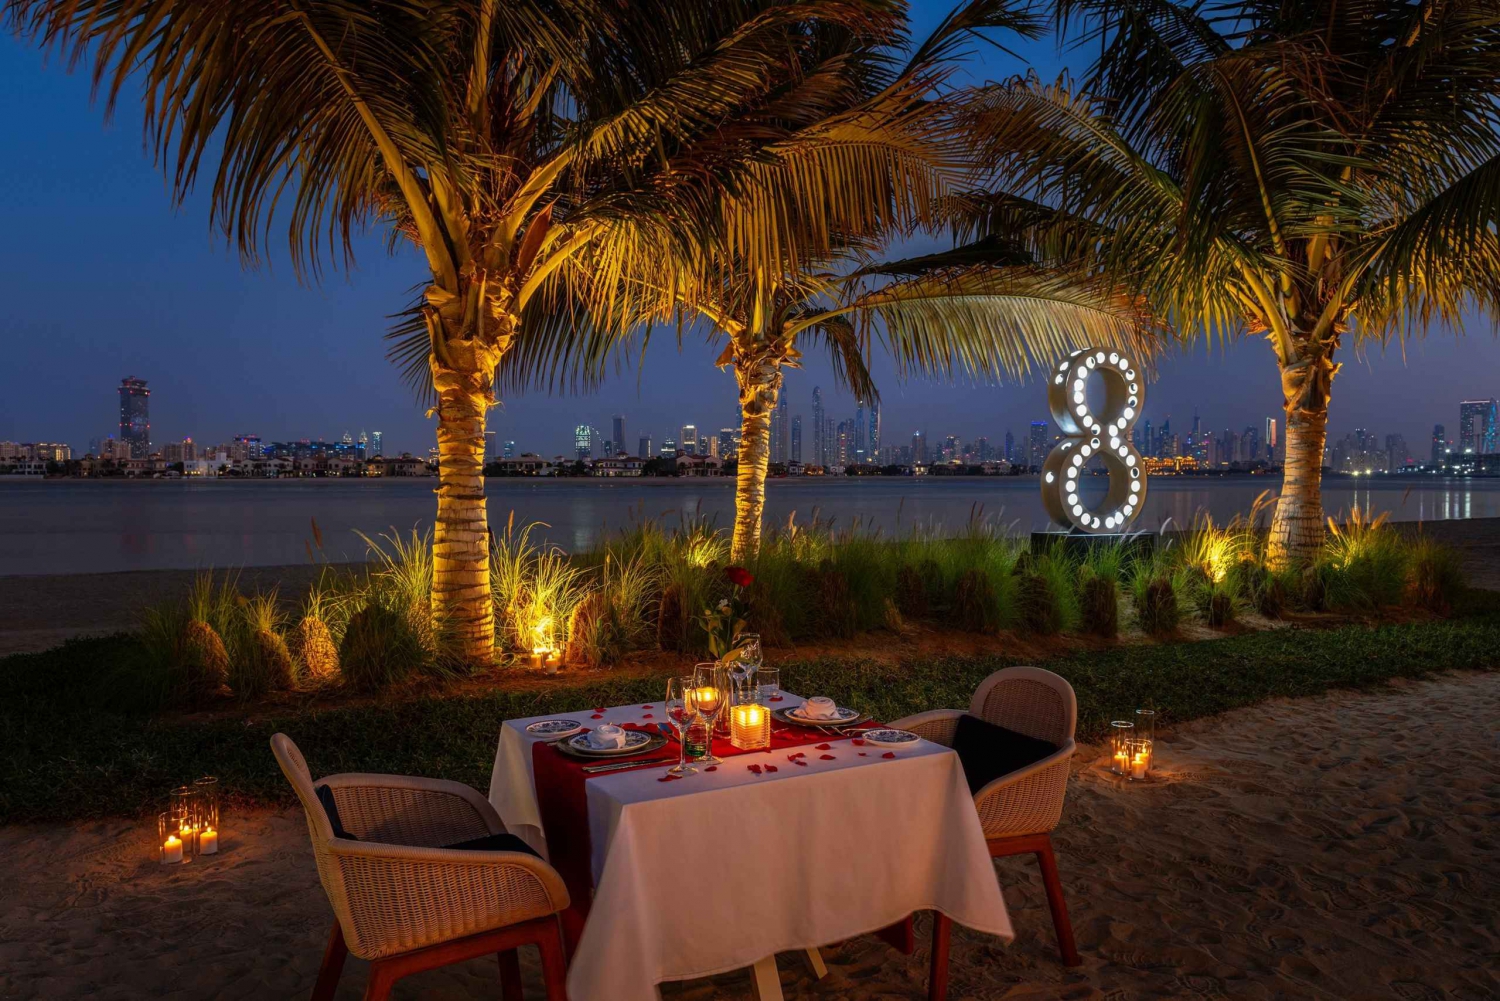 Dubai: Cena romántica en la playa para 2 con vistas al horizonte